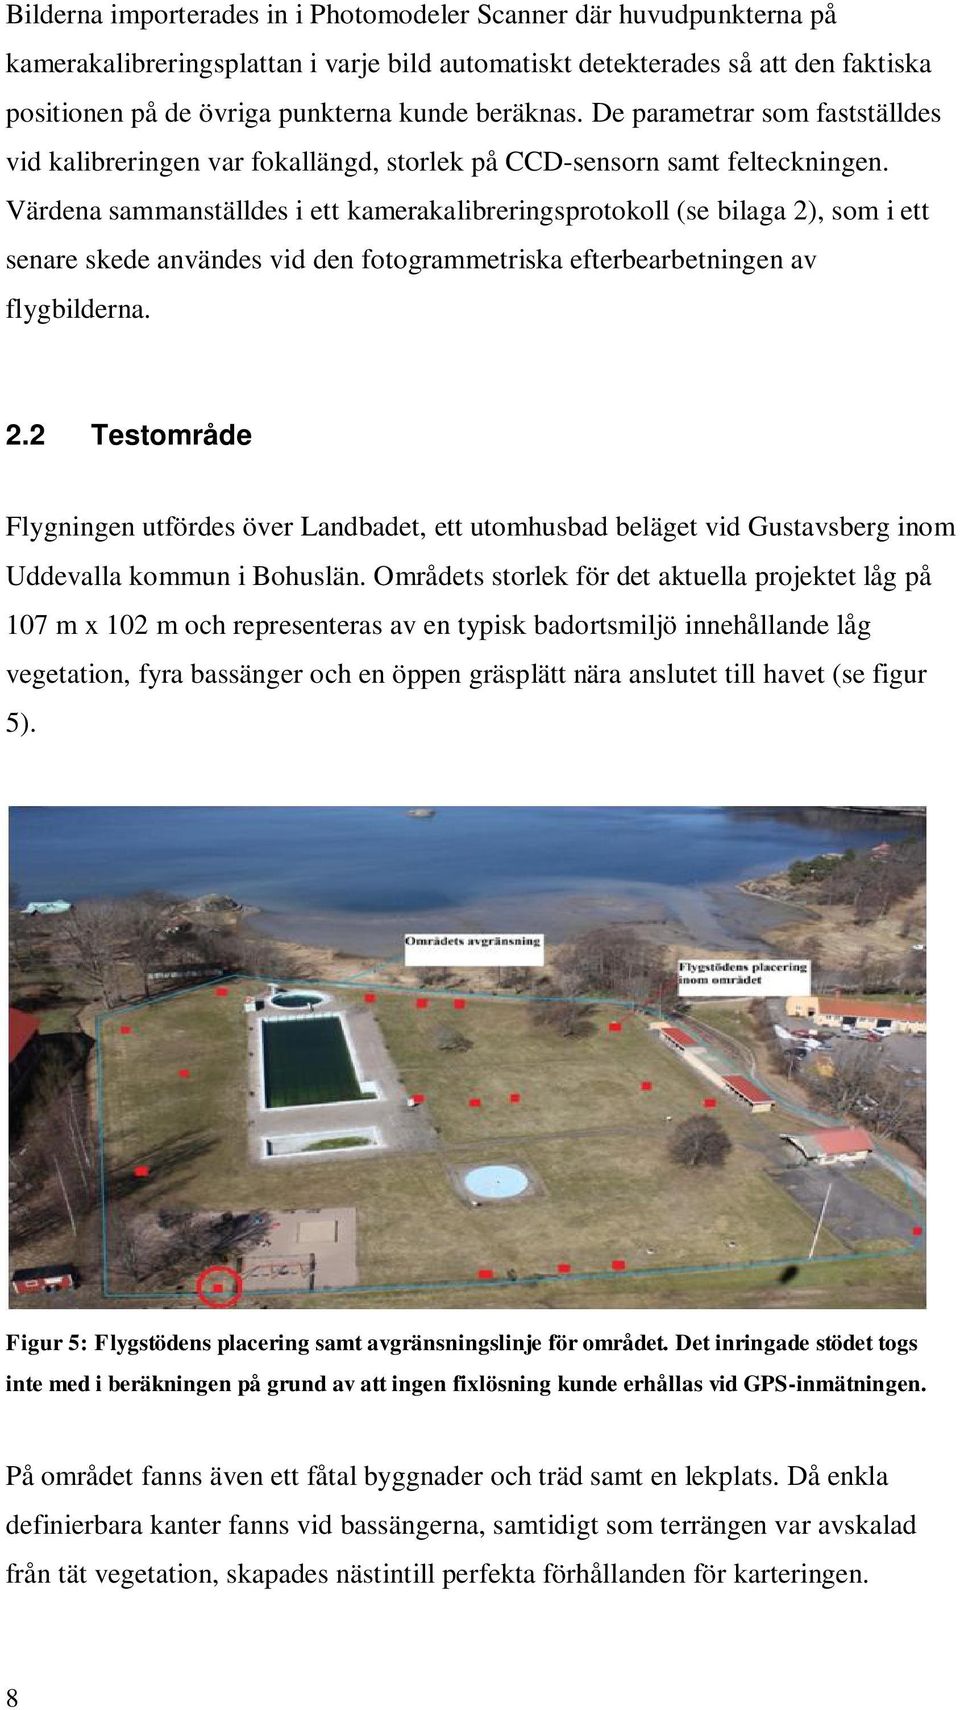 Värdena sammanställdes i ett kamerakalibreringsprotokoll (se bilaga 2), som i ett senare skede användes vid den fotogrammetriska efterbearbetningen av flygbilderna. 2.2 Testområde Flygningen utfördes över Landbadet, ett utomhusbad beläget vid Gustavsberg inom Uddevalla kommun i Bohuslän.